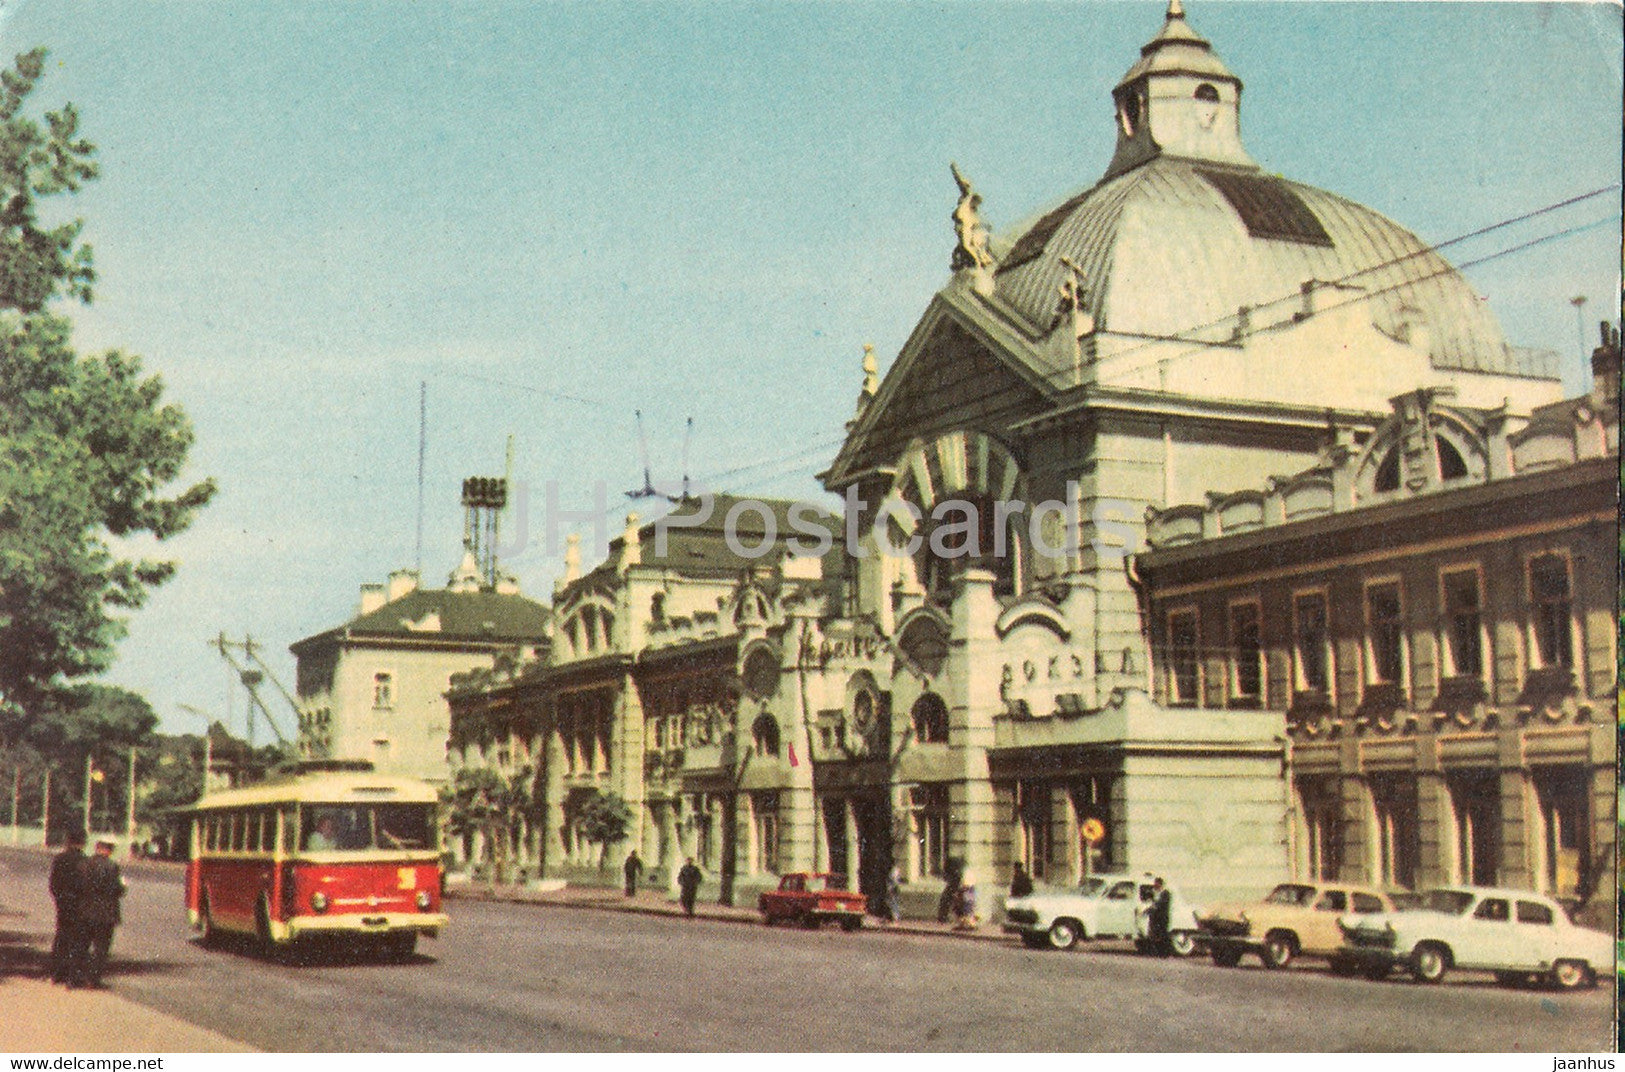 Chernivtsi - Railway Station - trolleybus - 1968 - Ukraine USSR - unused - JH Postcards